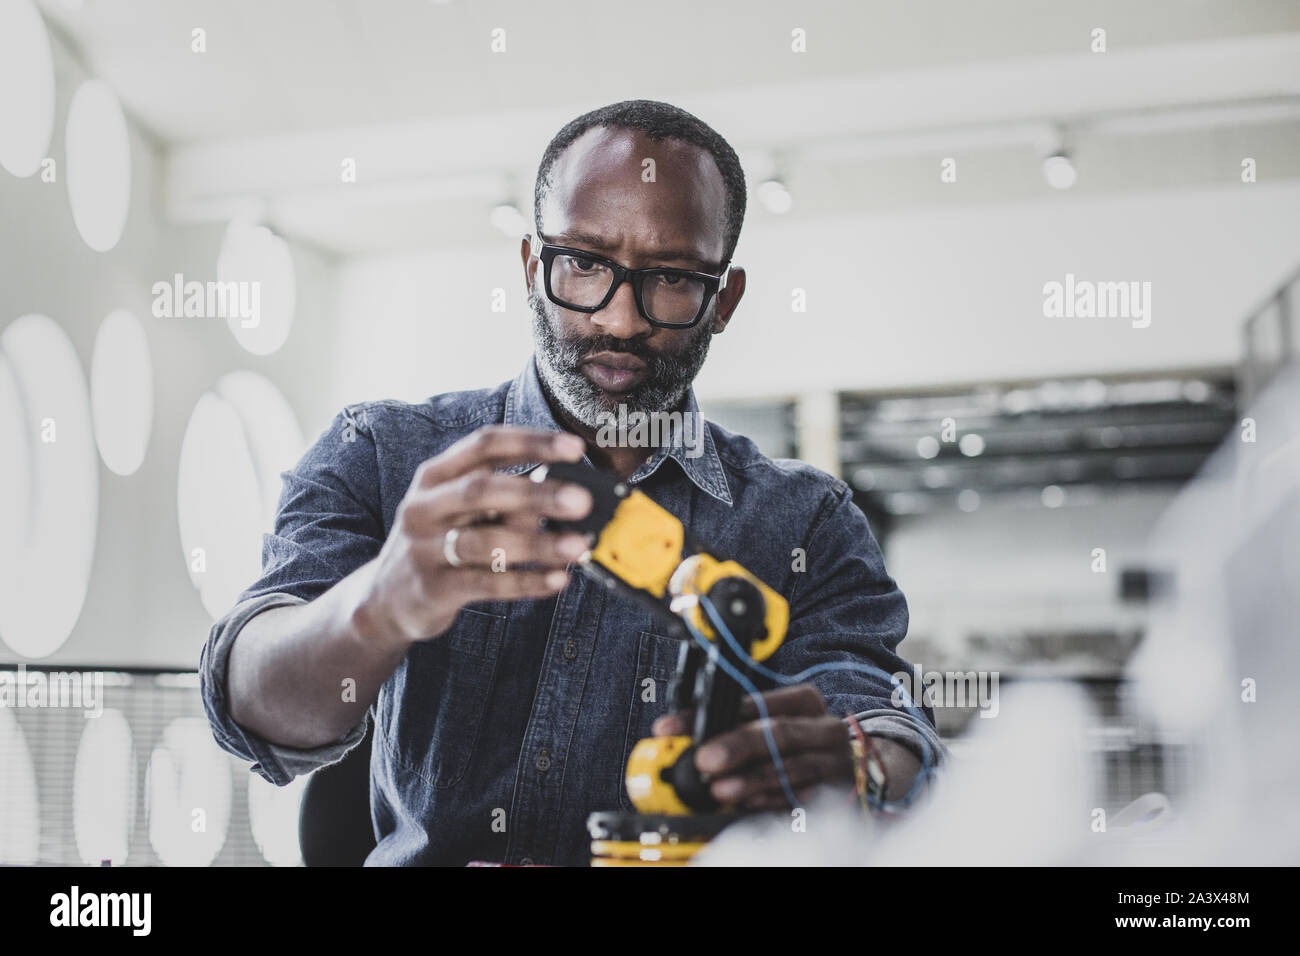 Libre ofAfrican mâles adultes américains travaillant sur la robotique Banque D'Images